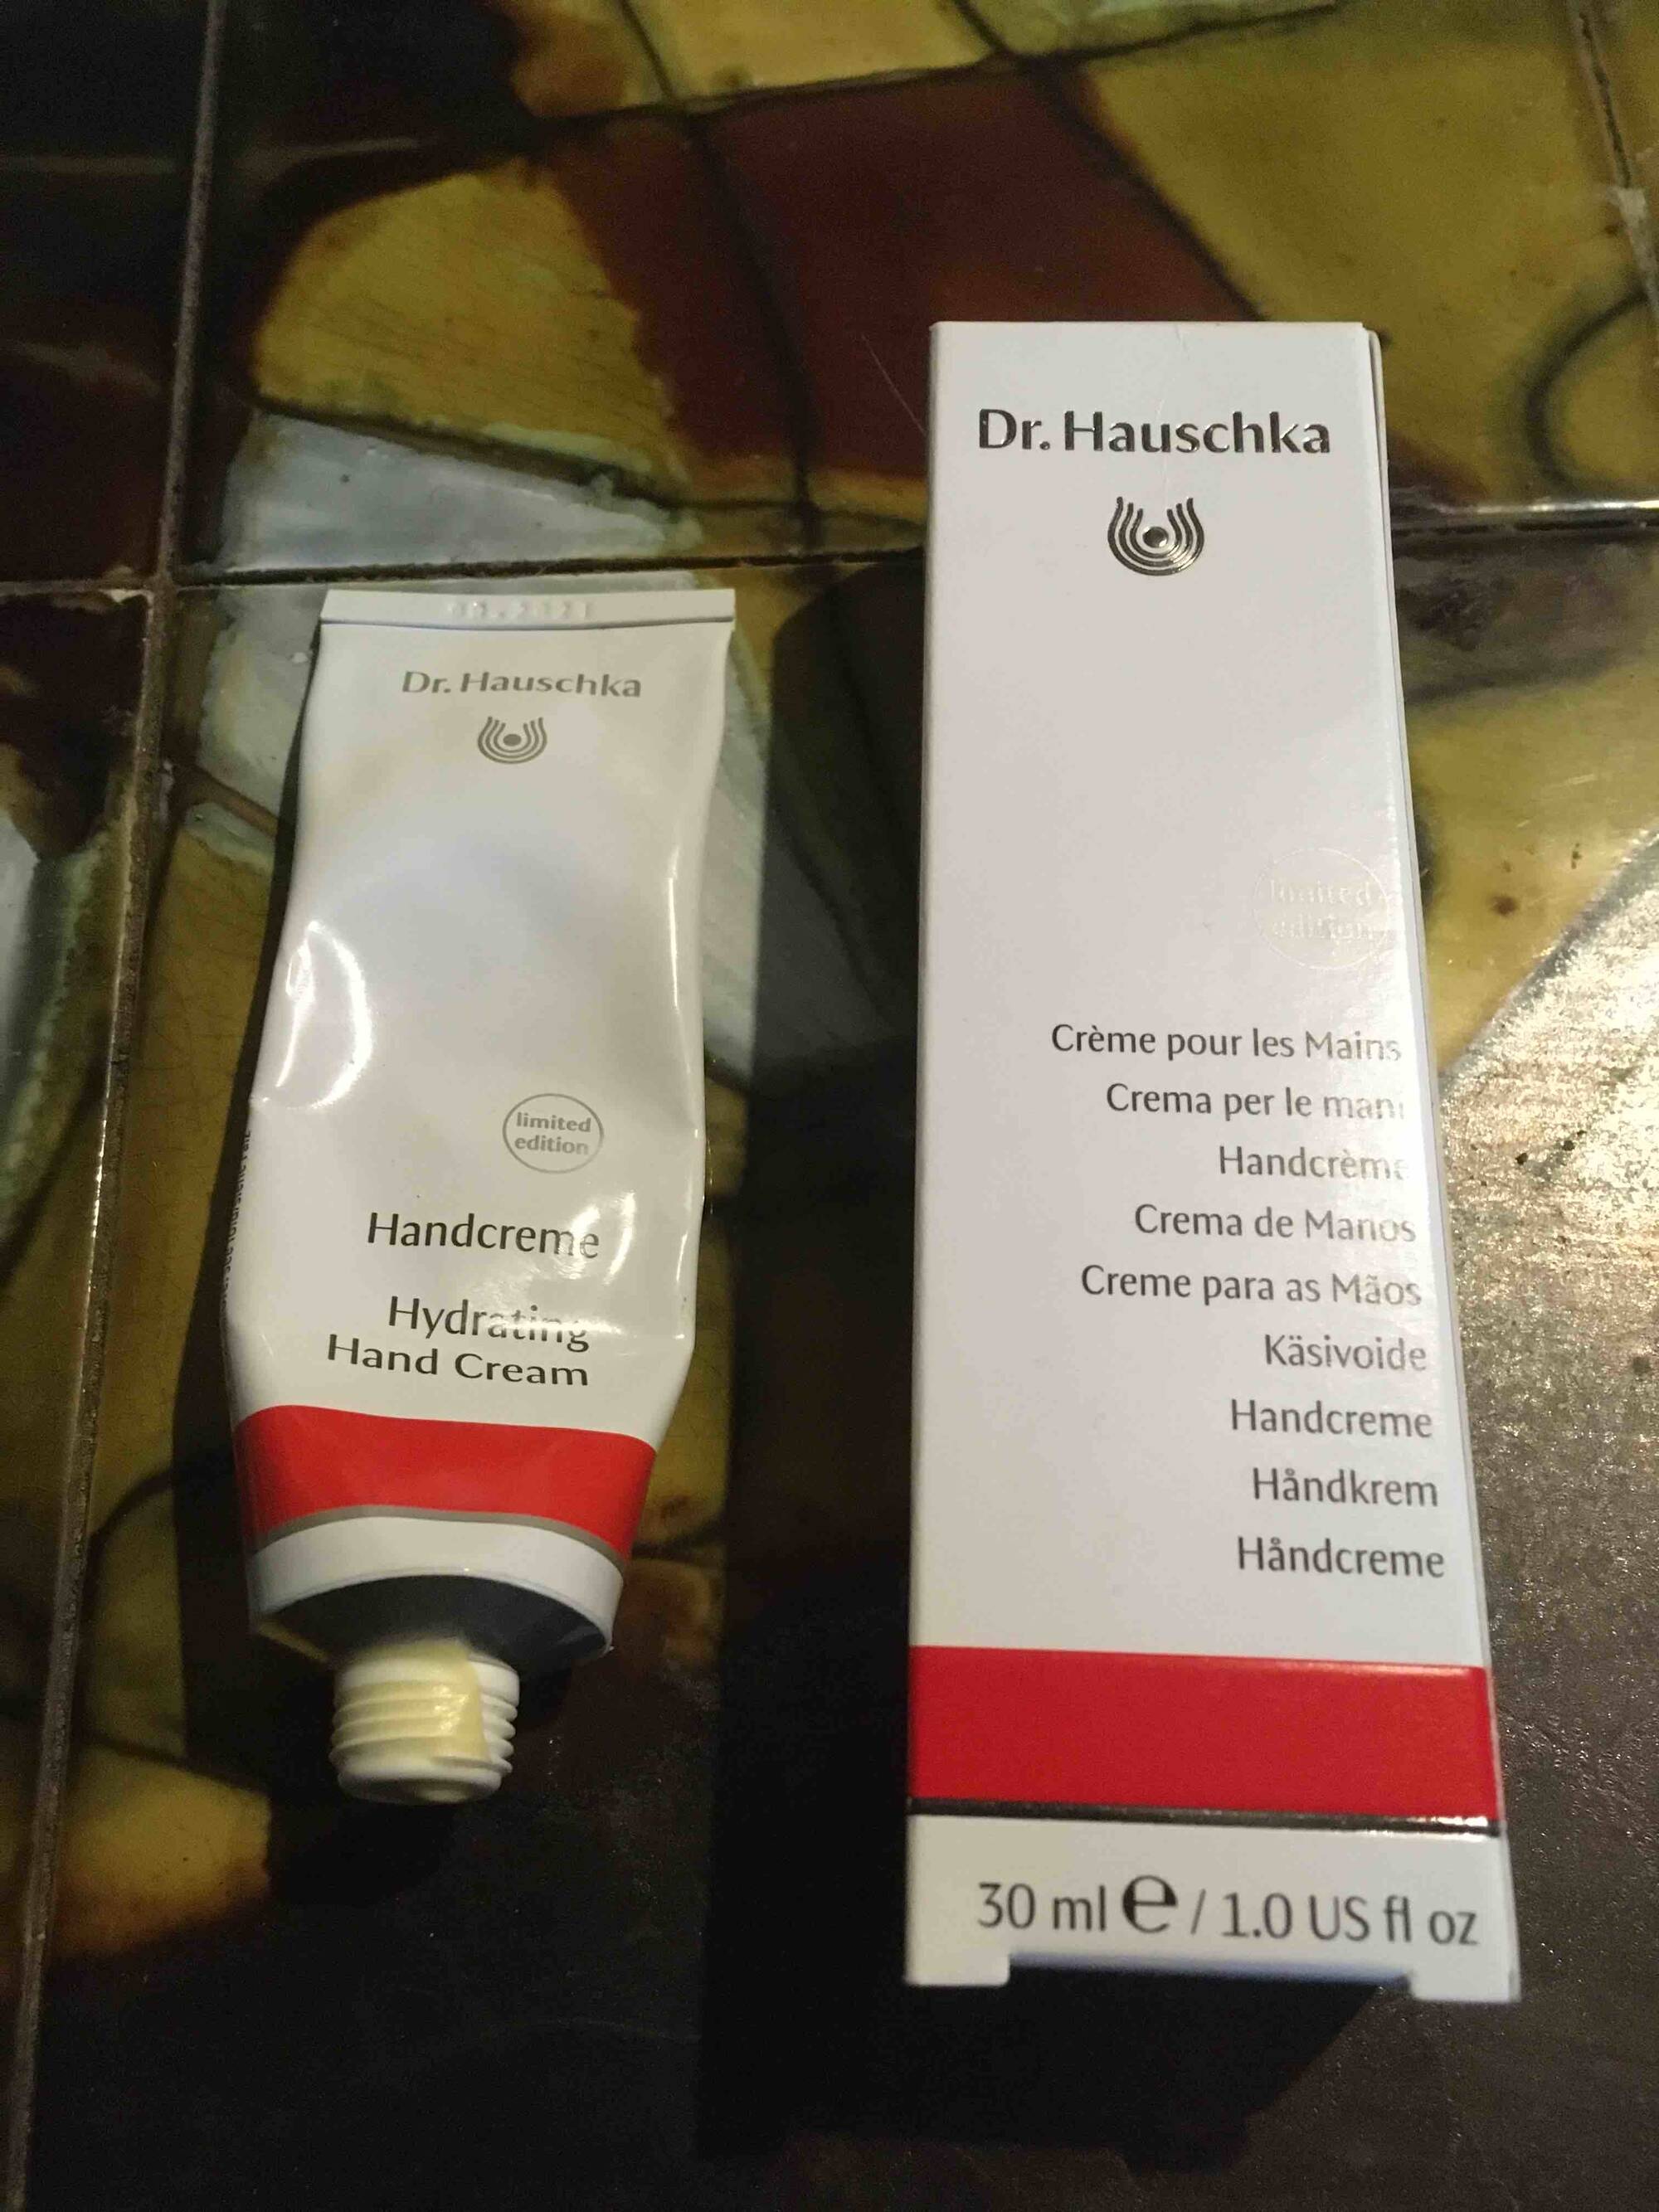 DR. HAUSCHKA - Crème pour les mains